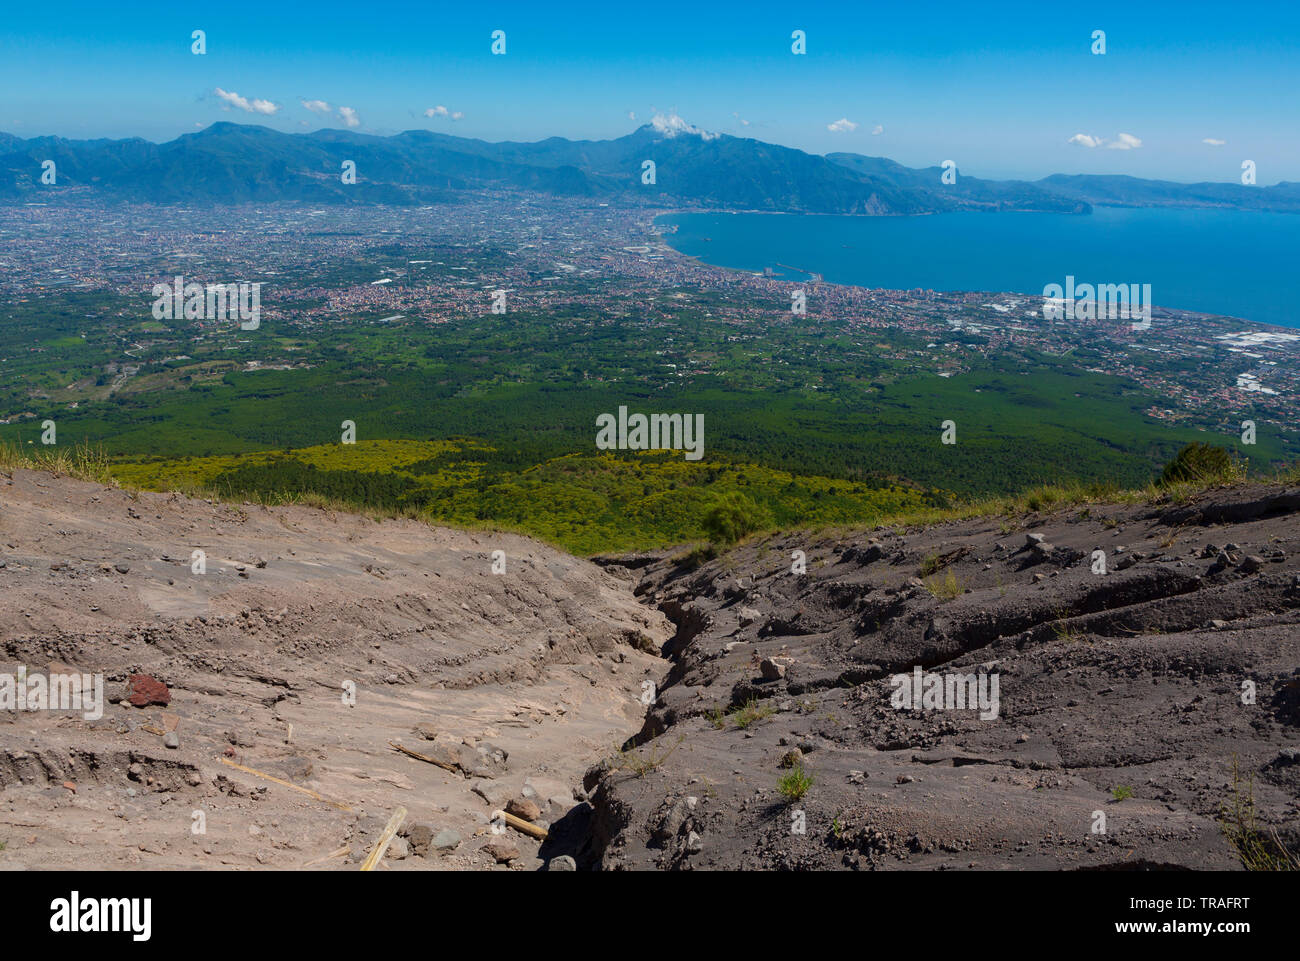 La vista desde la cima del Monte Vesubio domina las ciudades a lo largo de la Bahía de Nápoles, en el sur de Italia. Foto de stock